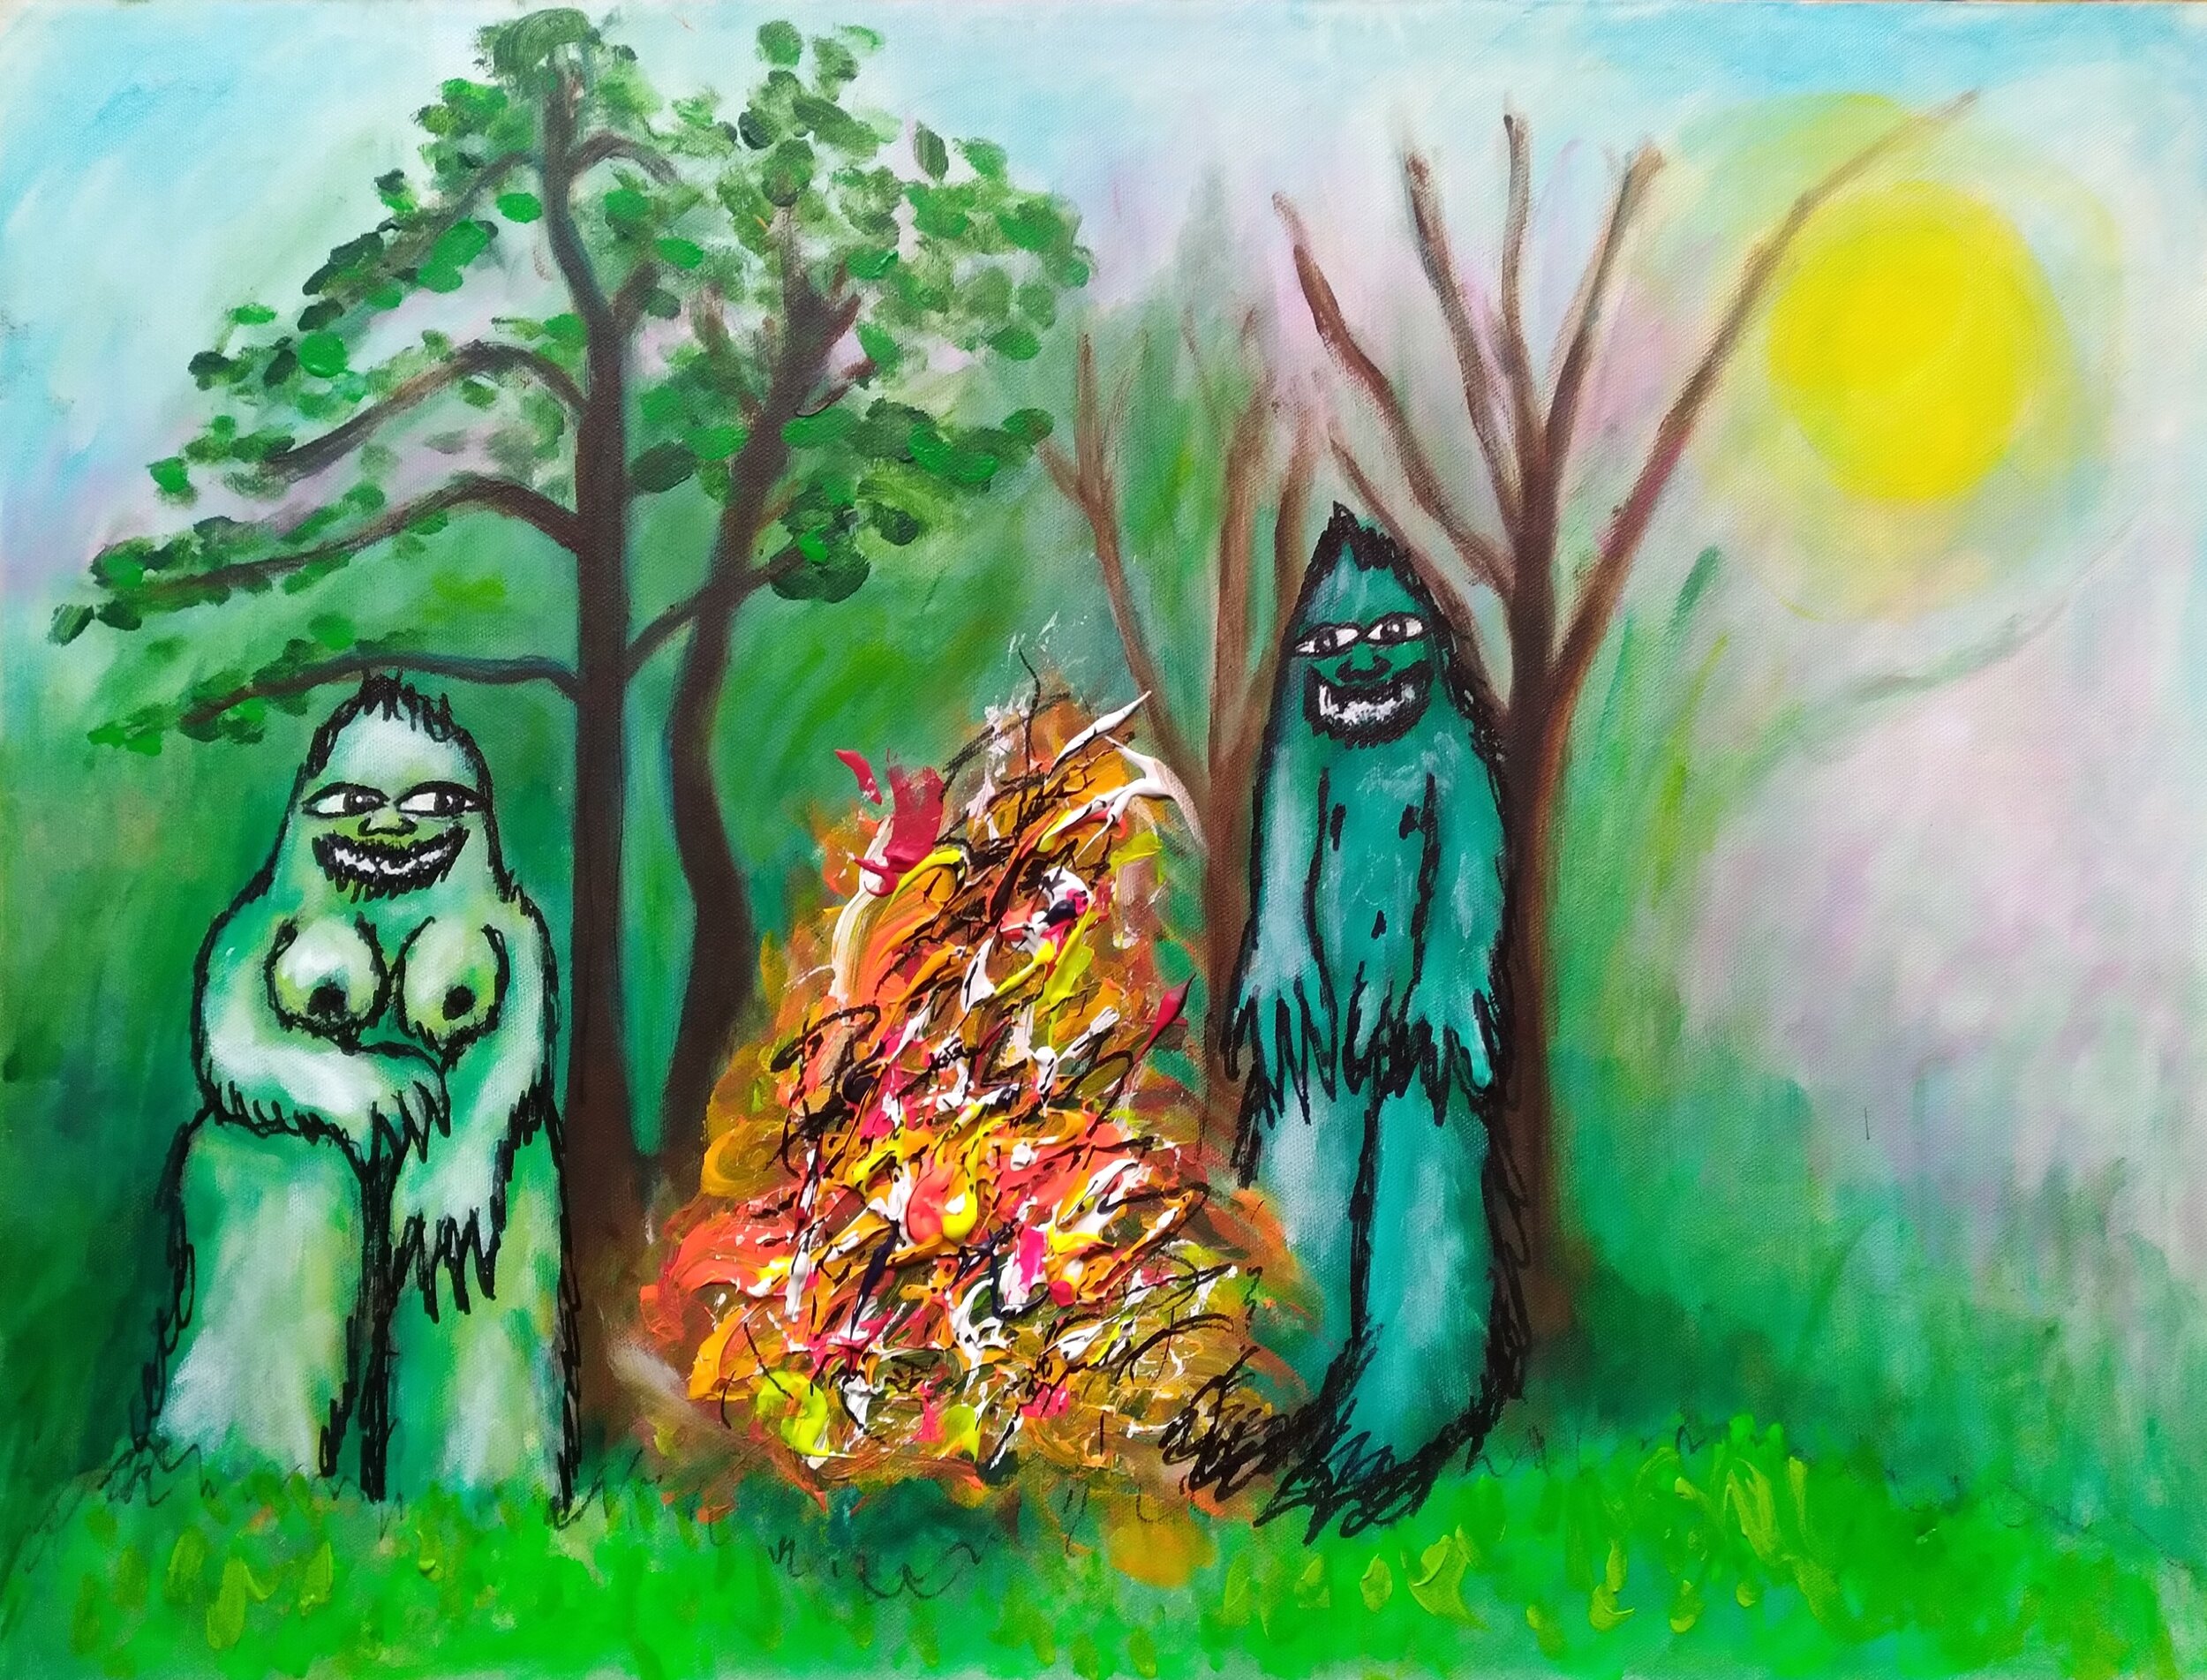 The Burning Bush, 2019. Oil, acrylic on canvas. 18” x 24”.